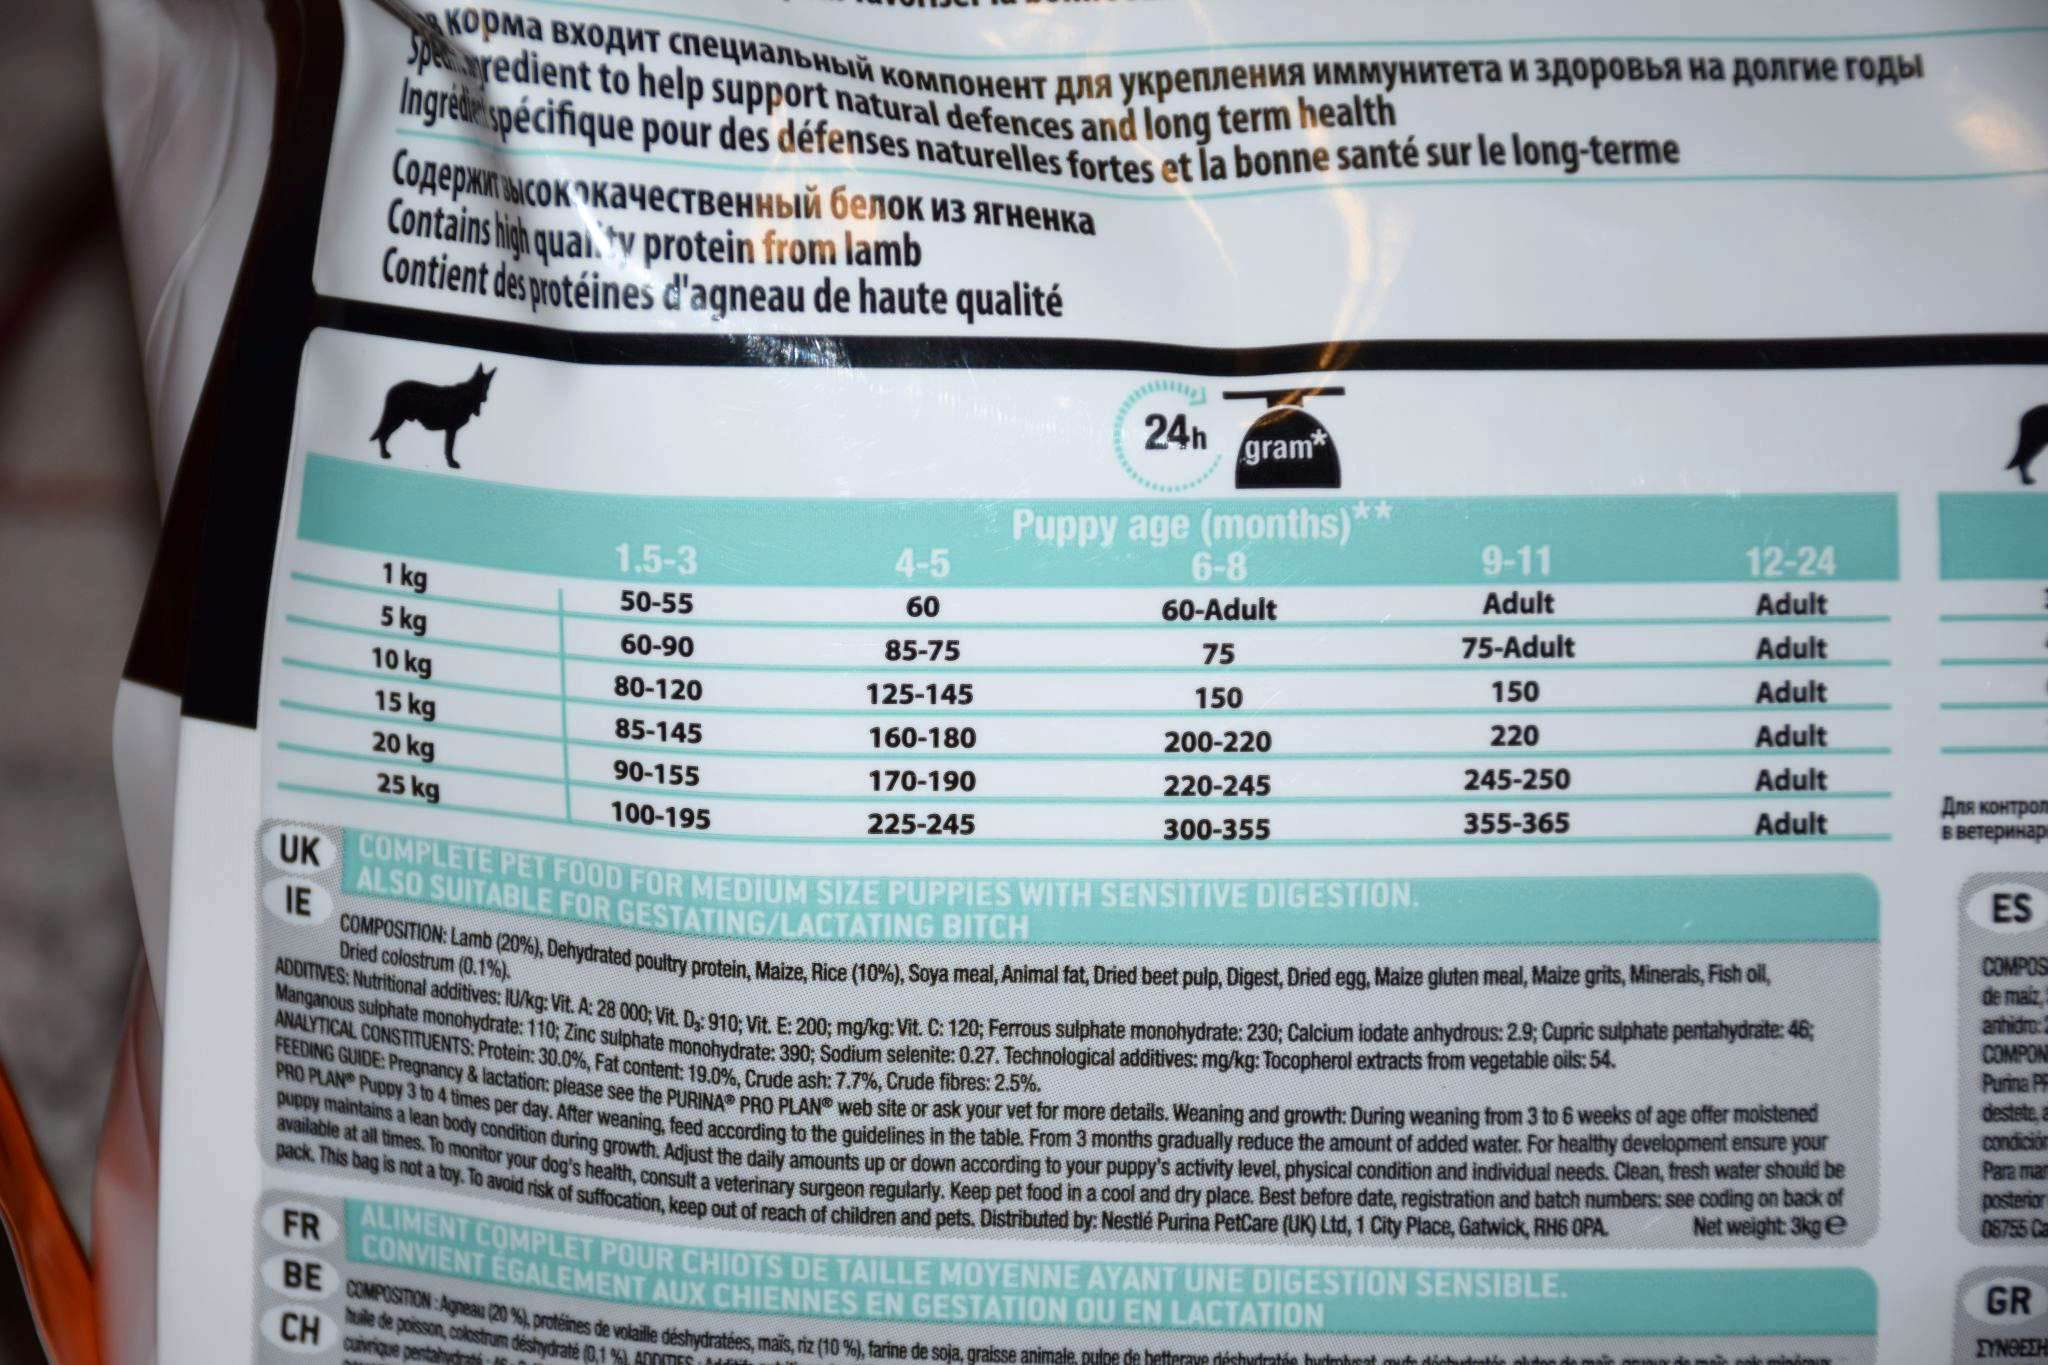 Швейцарское качество собачьего корма biomill: все самое лучшее нашим питомцам